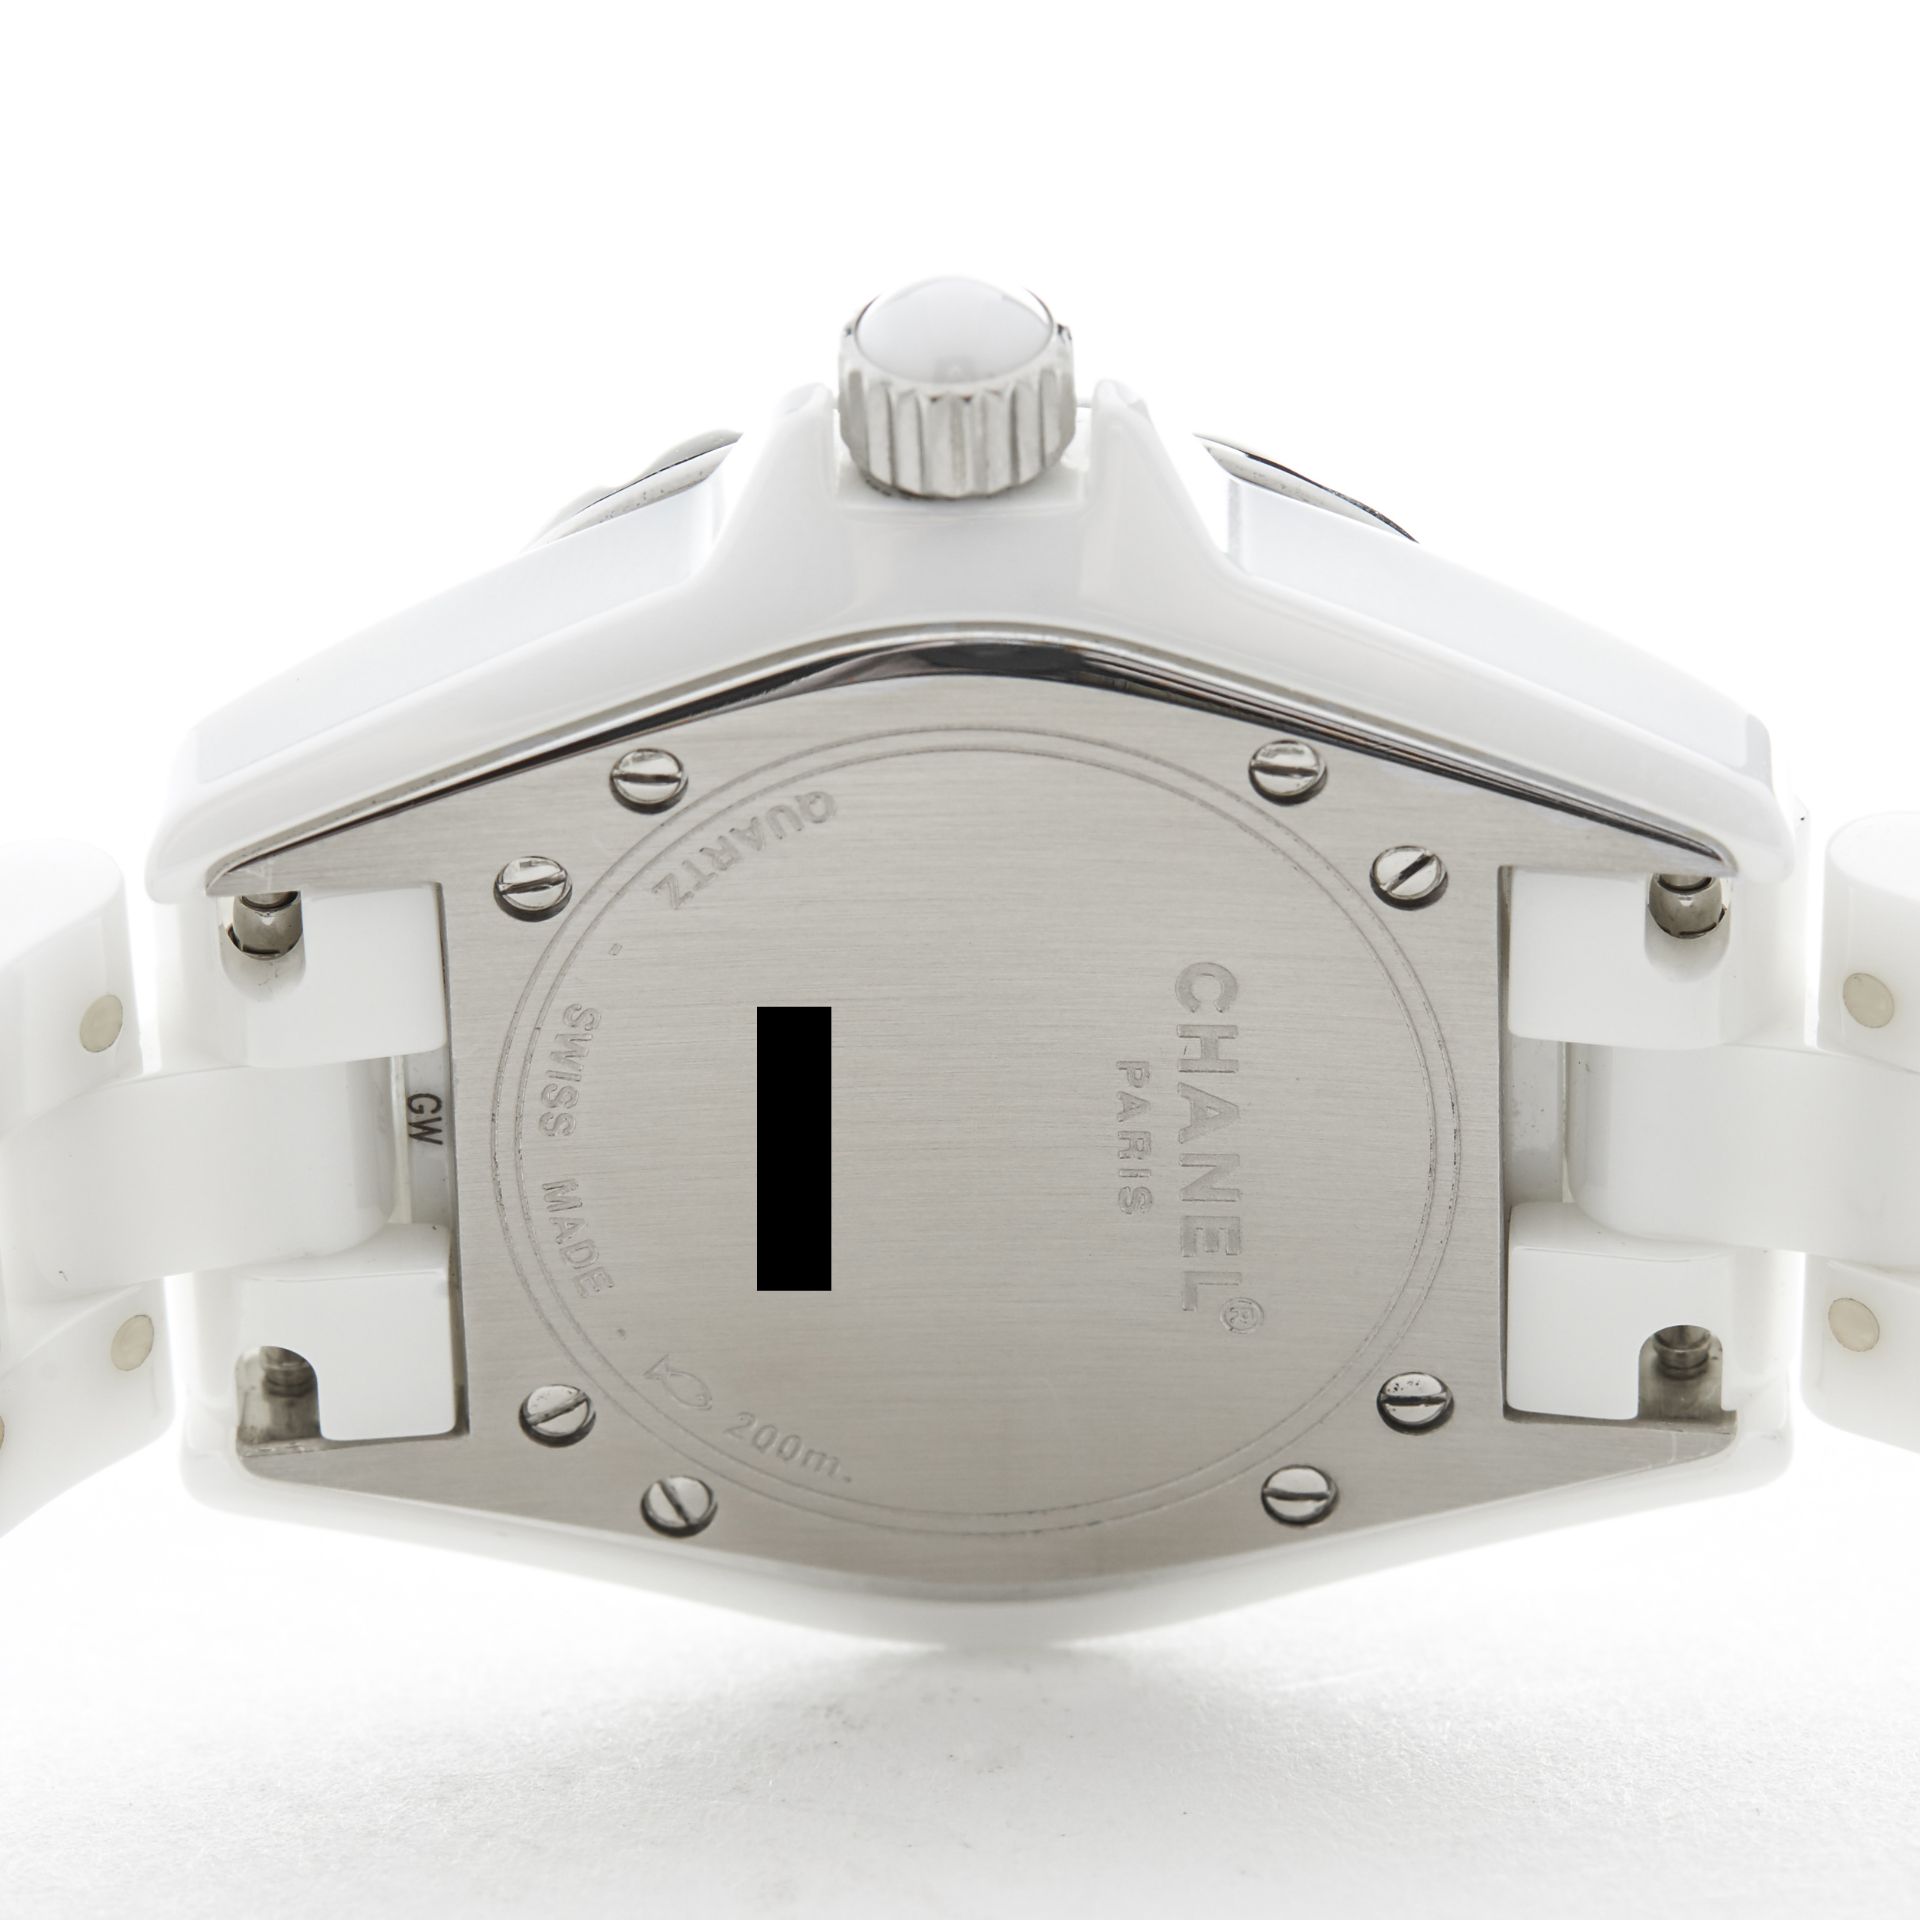 Chanel, J12 33mm White Ceramic H0967 - Image 7 of 7